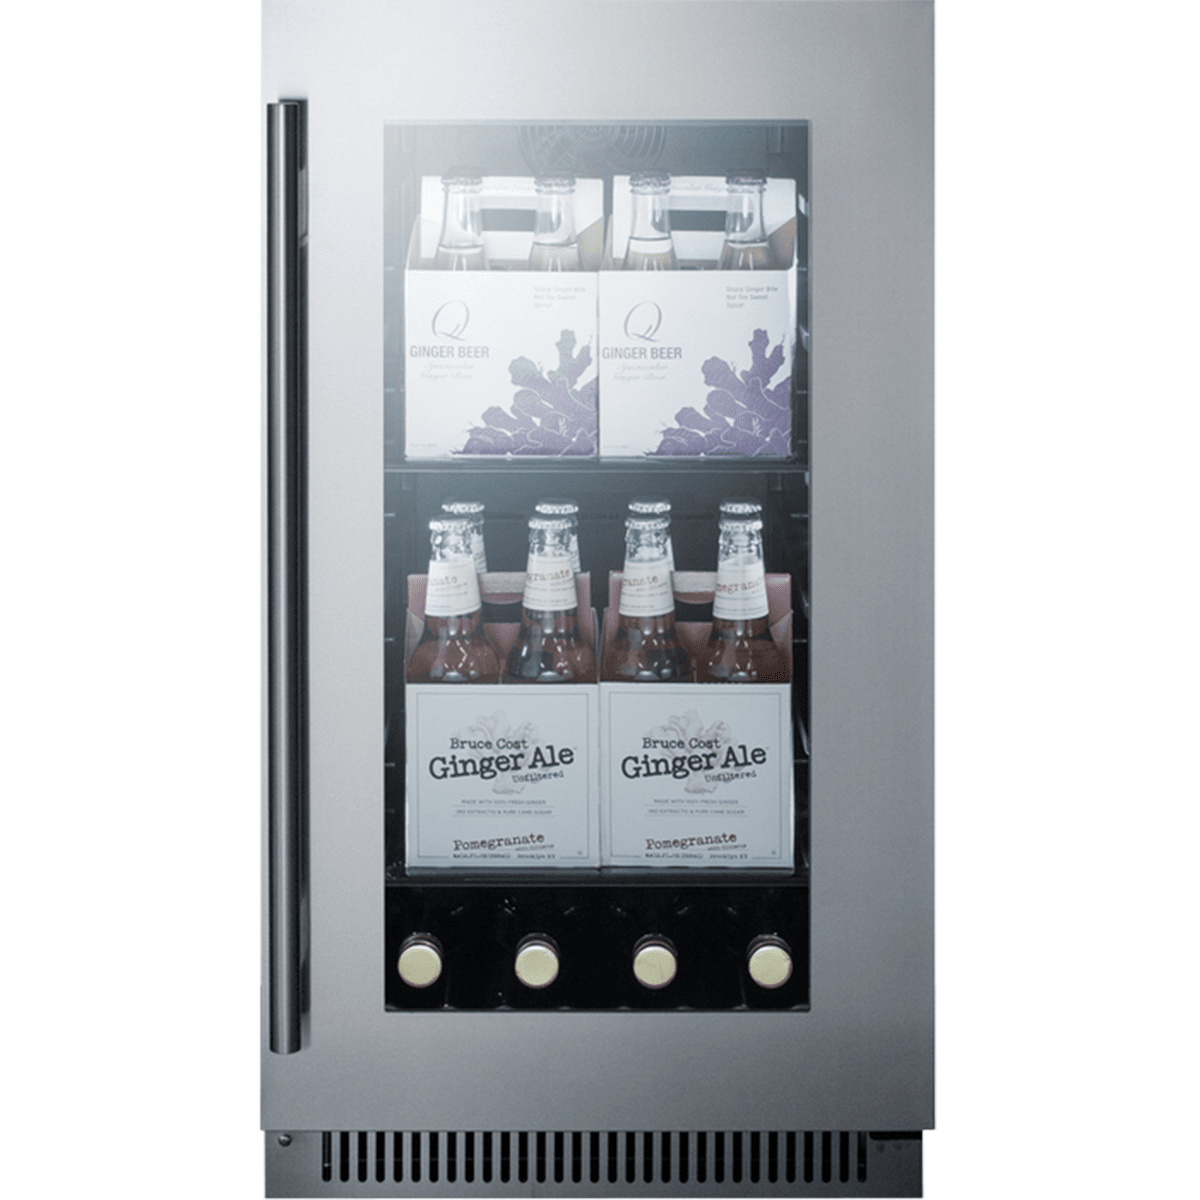 SUMMIT Built-in Glass Door Beverage Cooler w/ Digital Controls (CL181WBV)